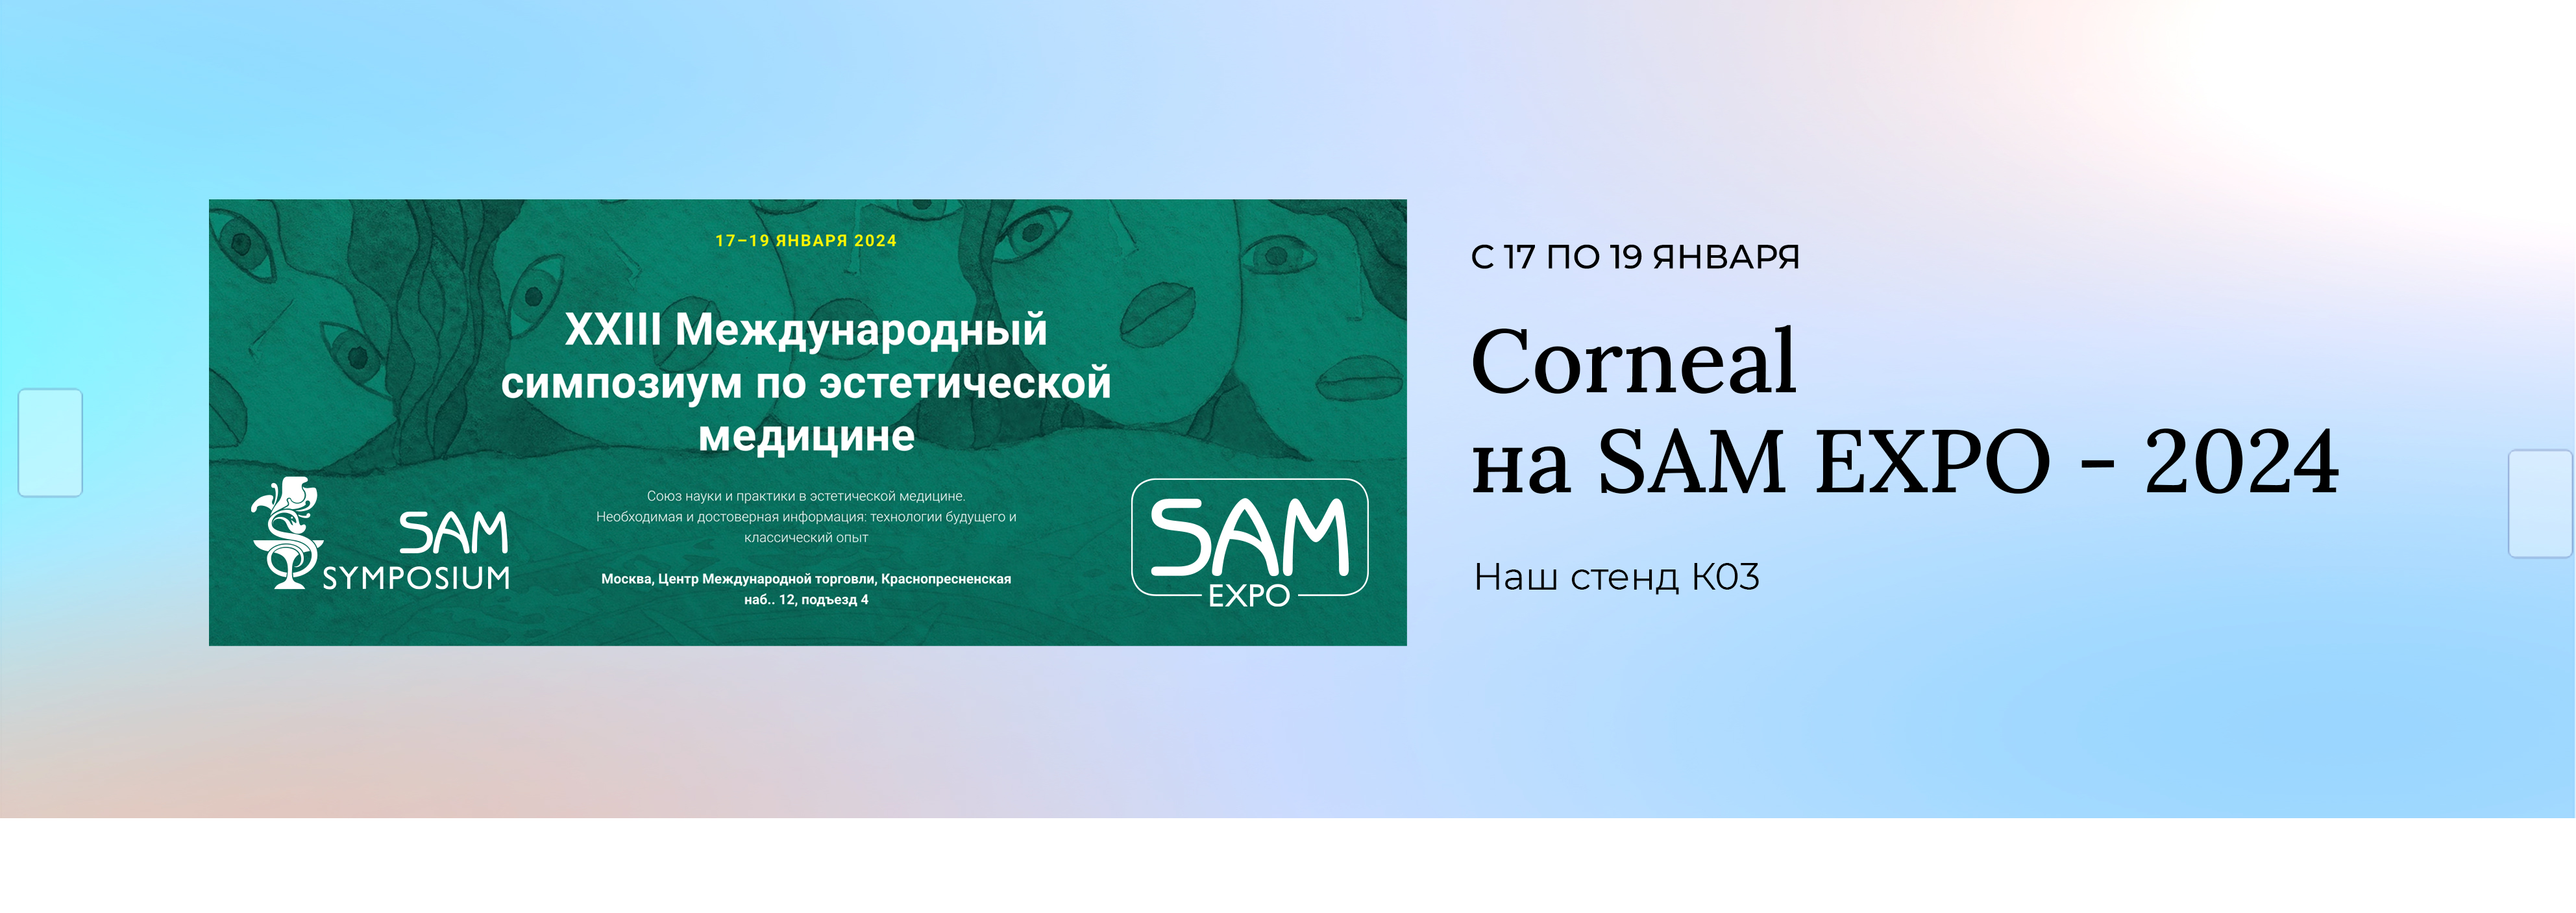 XXIII Международный симпозиум по эстетической медицине SAM